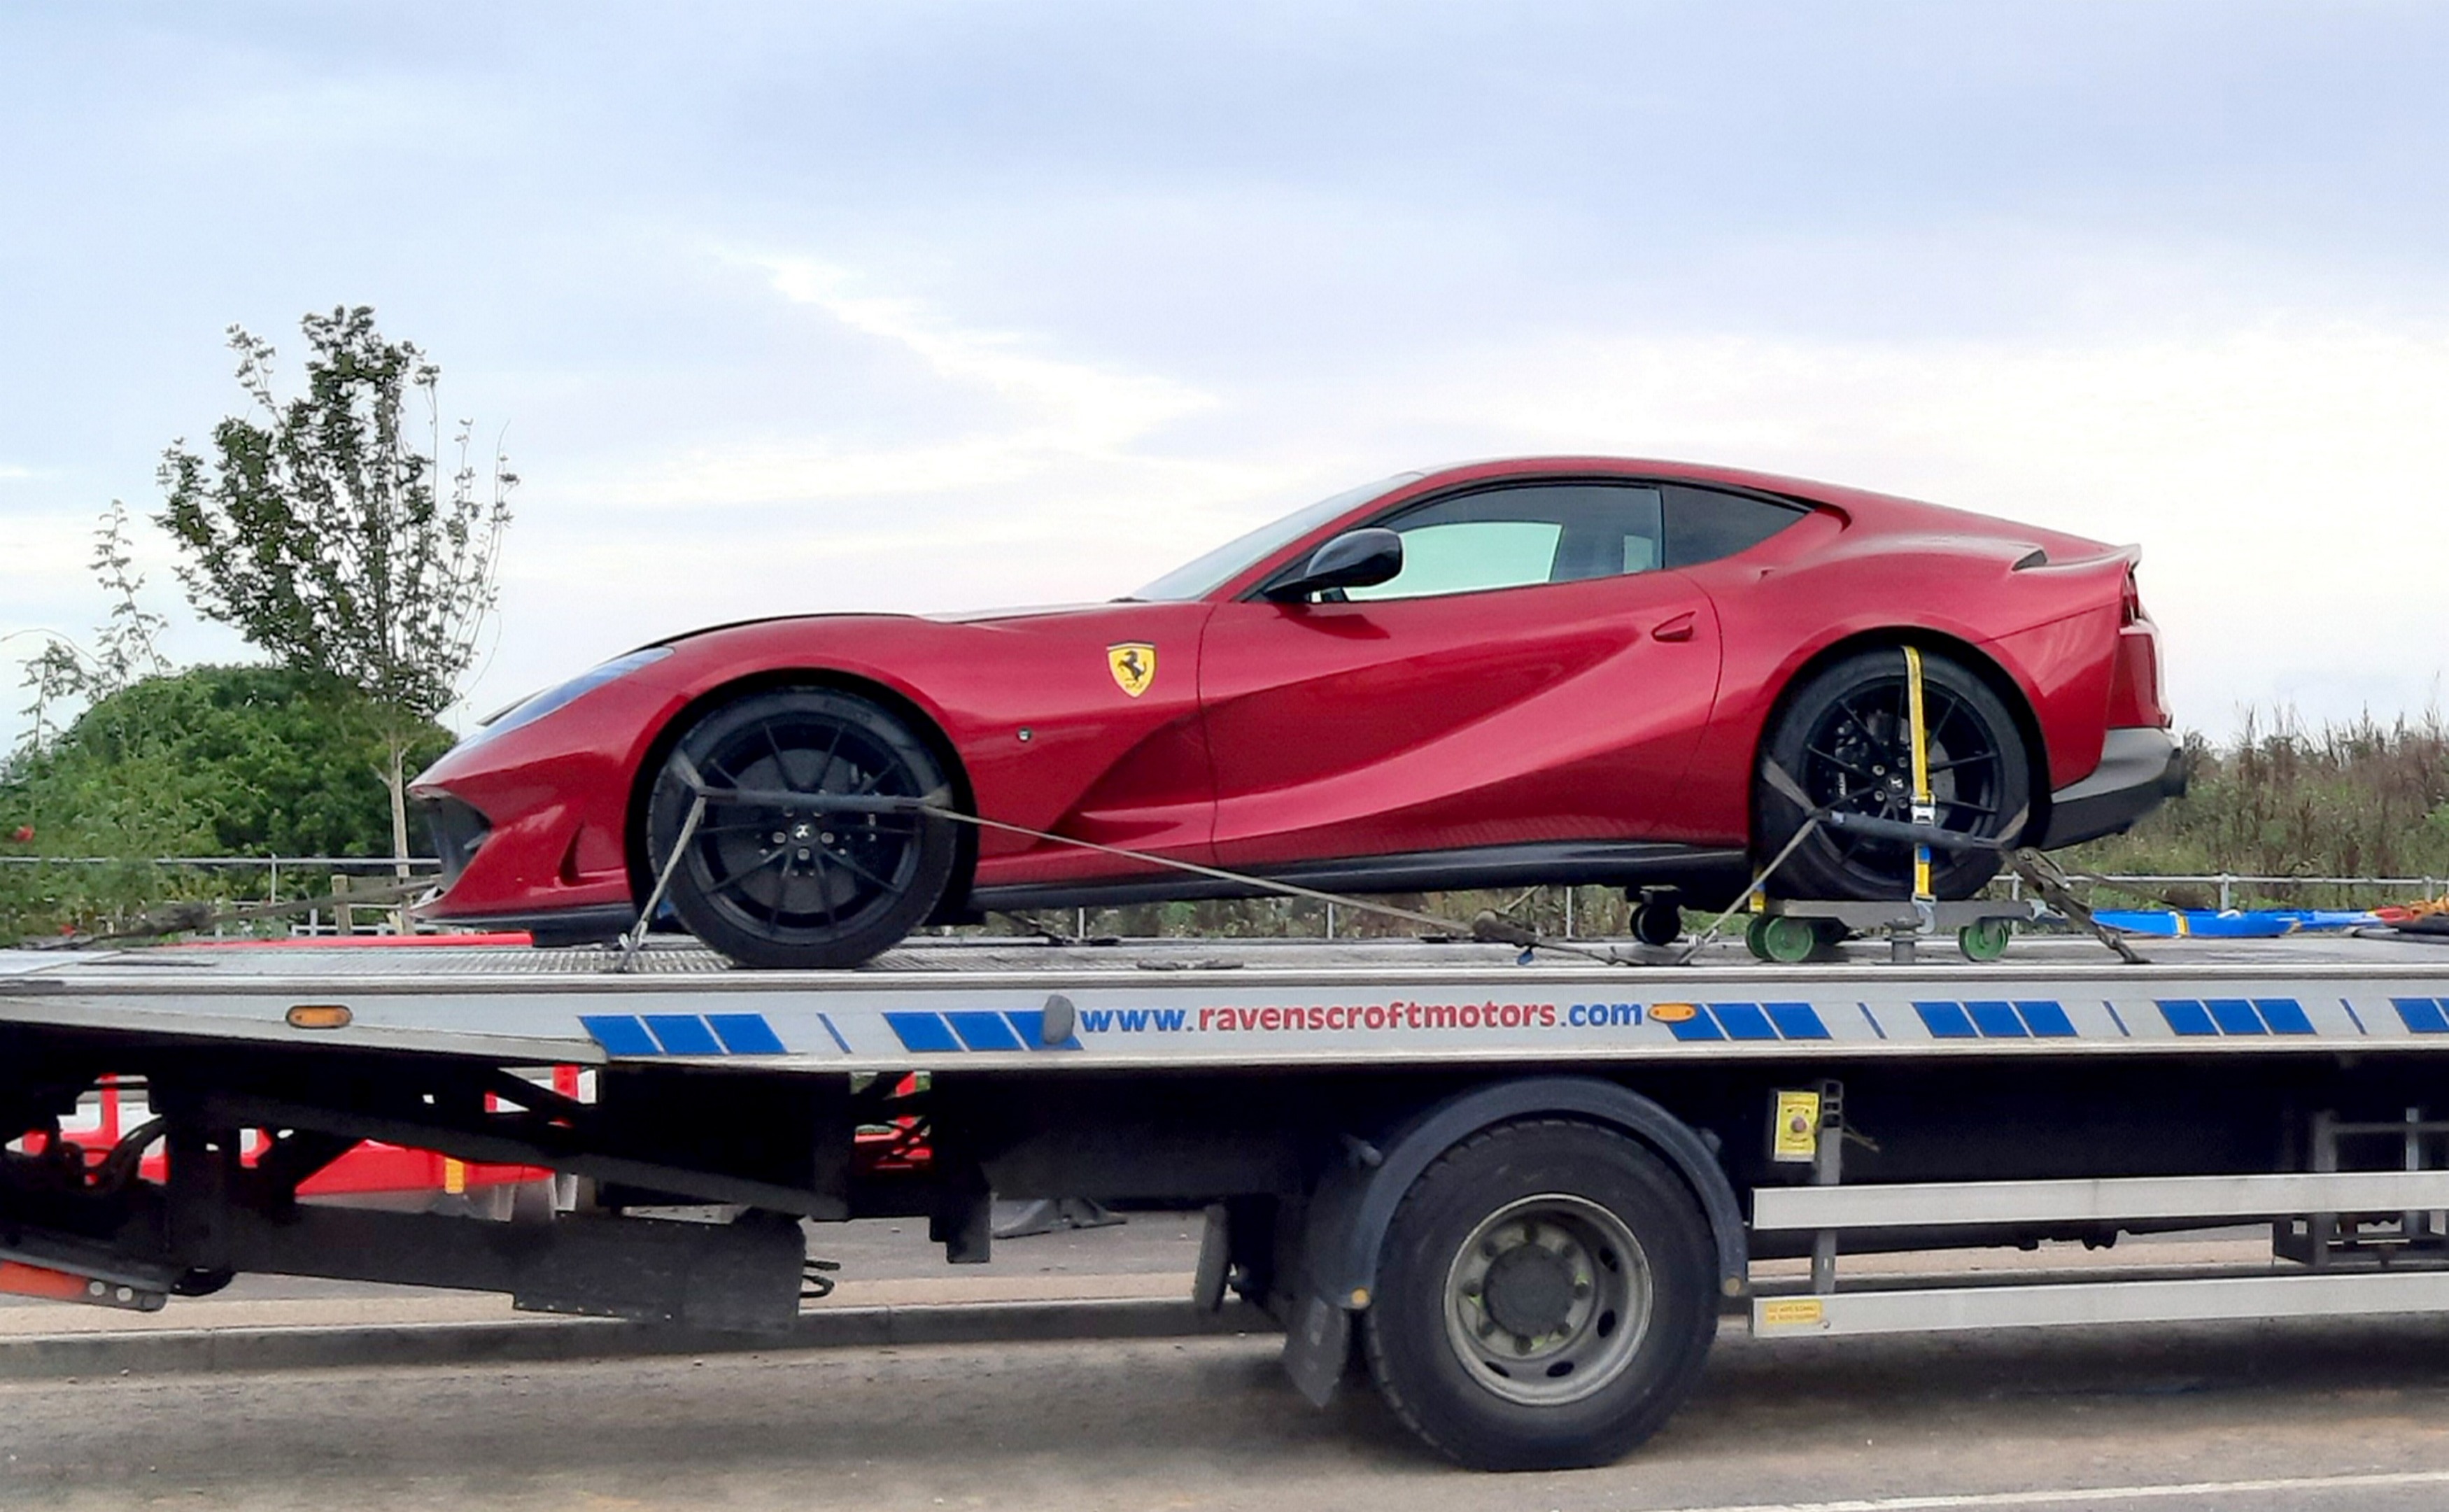 Der geborgene Ferrari 812 Superfast im Wert von 260.000 £ wurde geborgen